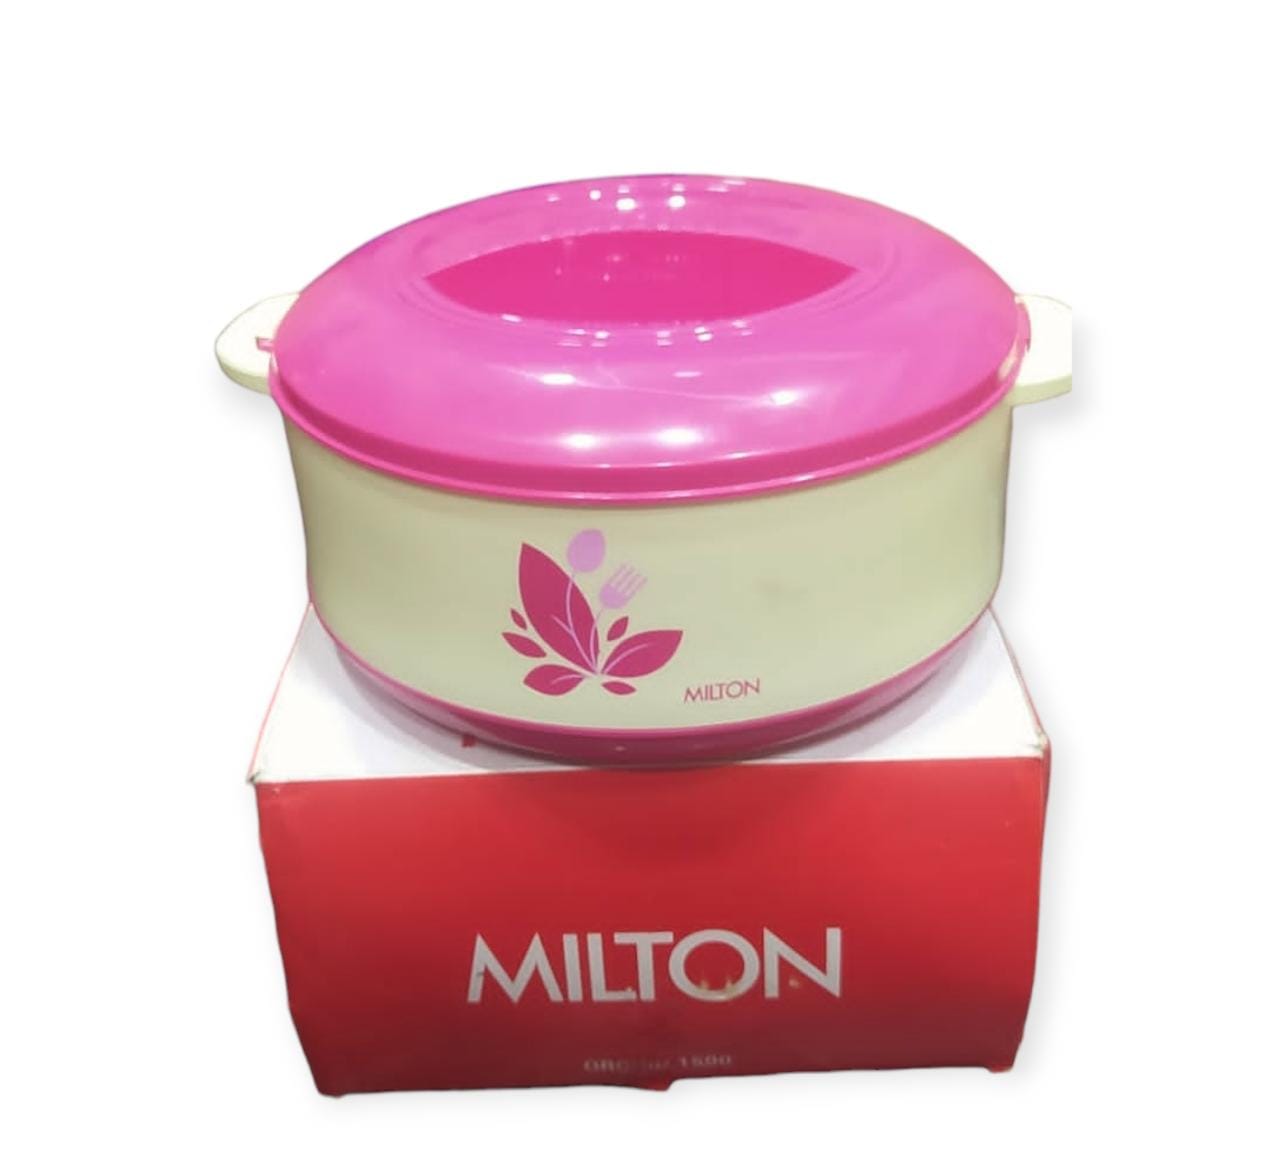 Milton hot pot 